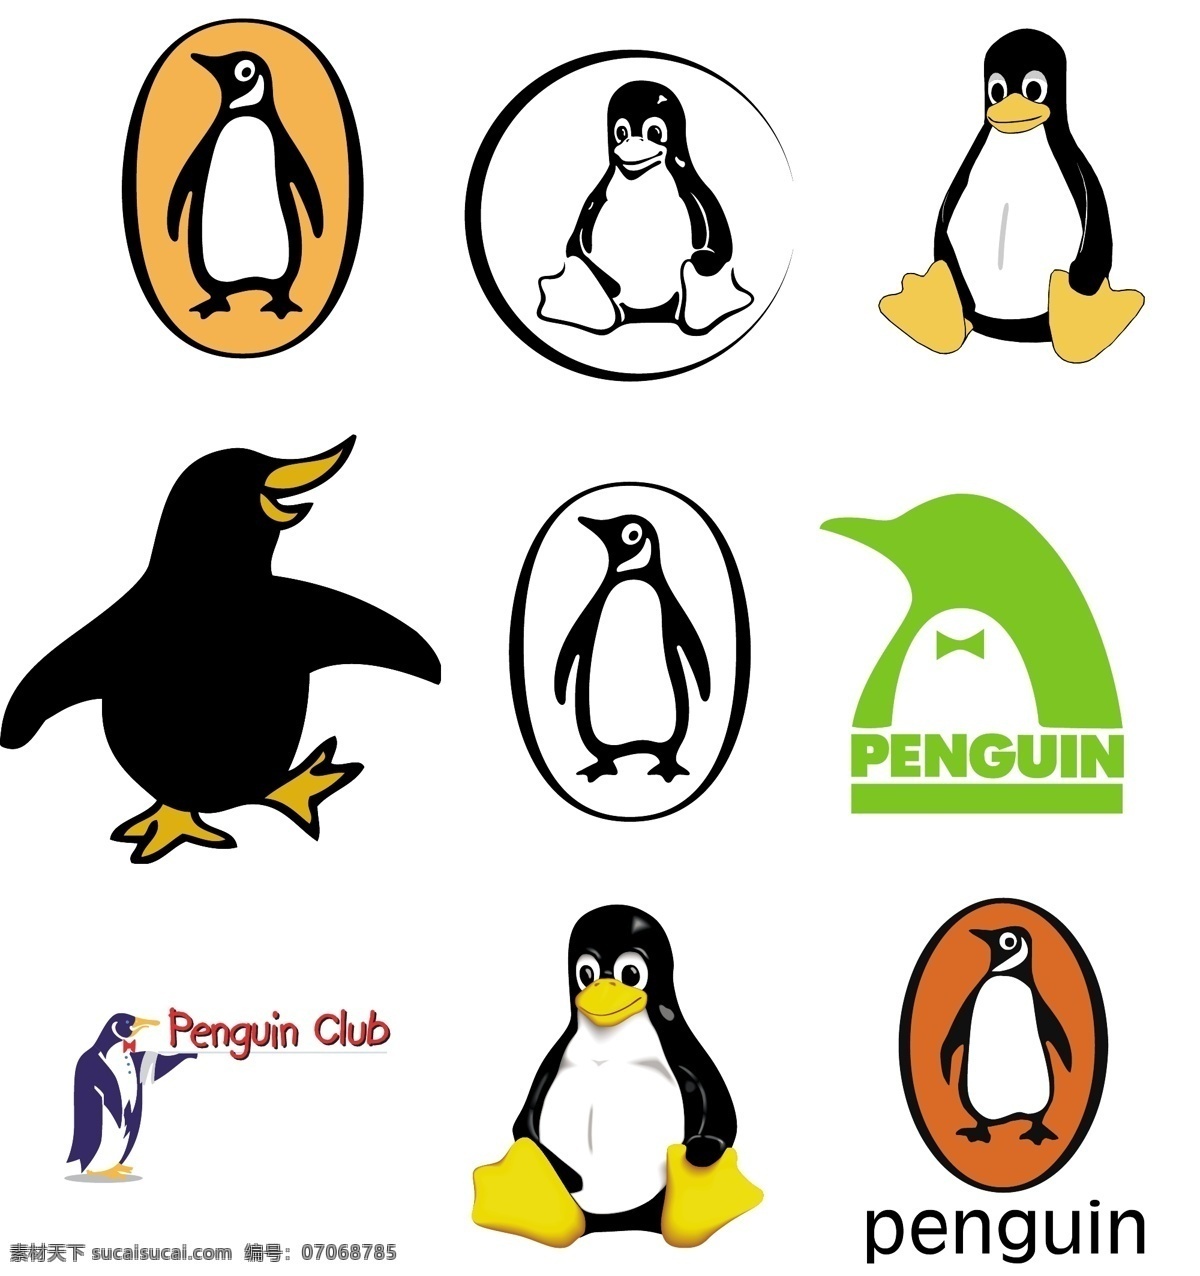 各式各样 矢量 企鹅 penguin 2010 年 最新 可爱 卡通 十二生肖 动物 人物 元素 系列 总 收藏 合集 标致logo 矢量图库 图形图标 生物世界 家禽家畜 矢量动物元素 标识标志图标